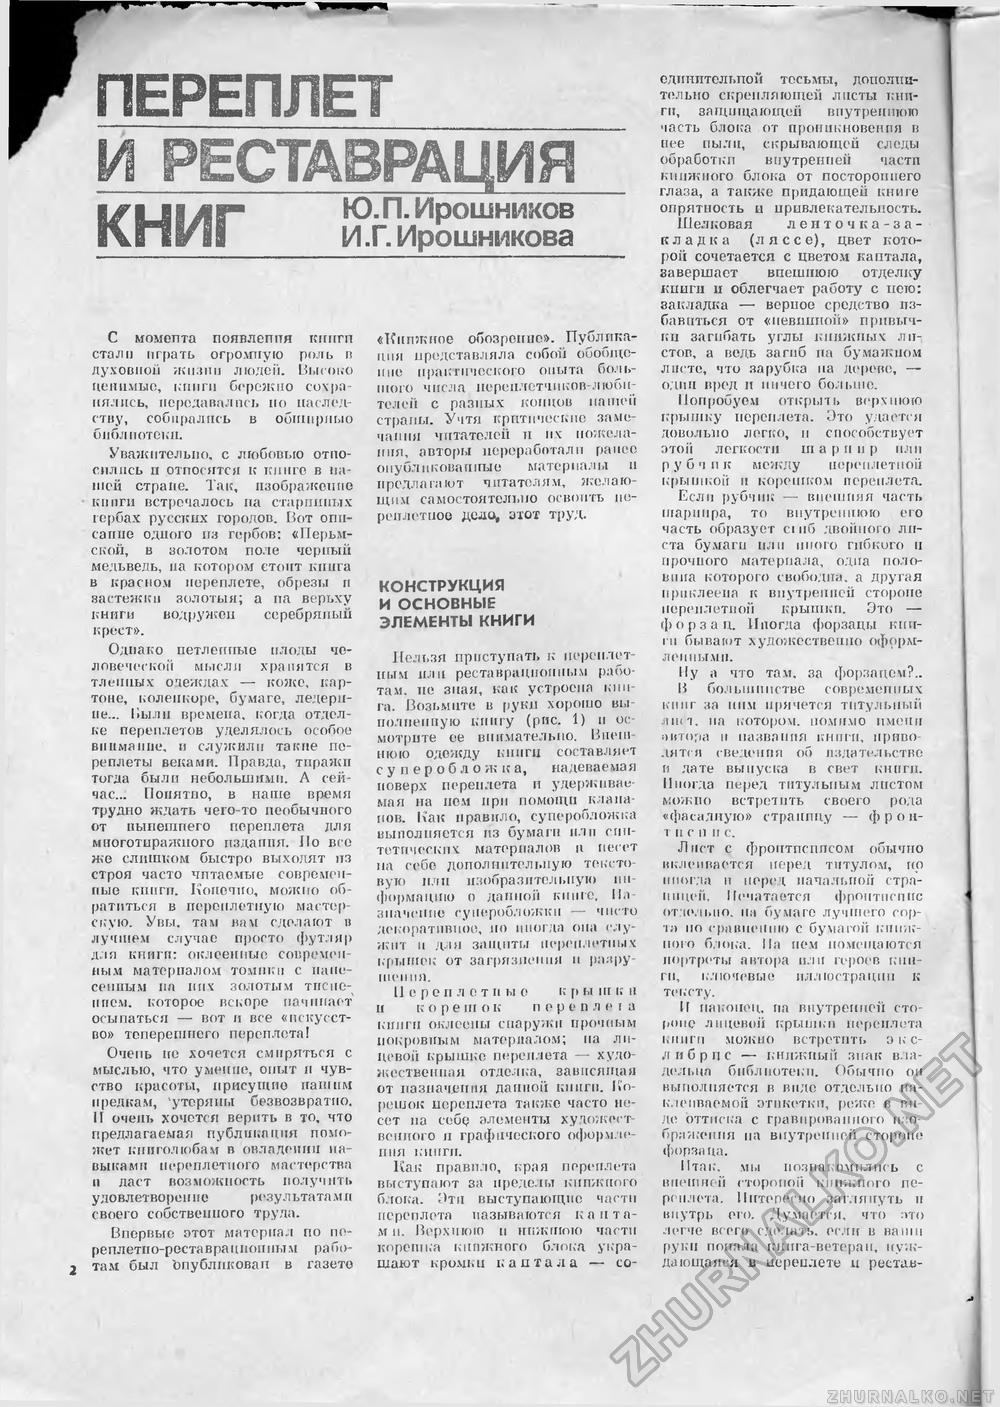 Сделай Сам (Знание) 1989-01 переплет книг, страница 2